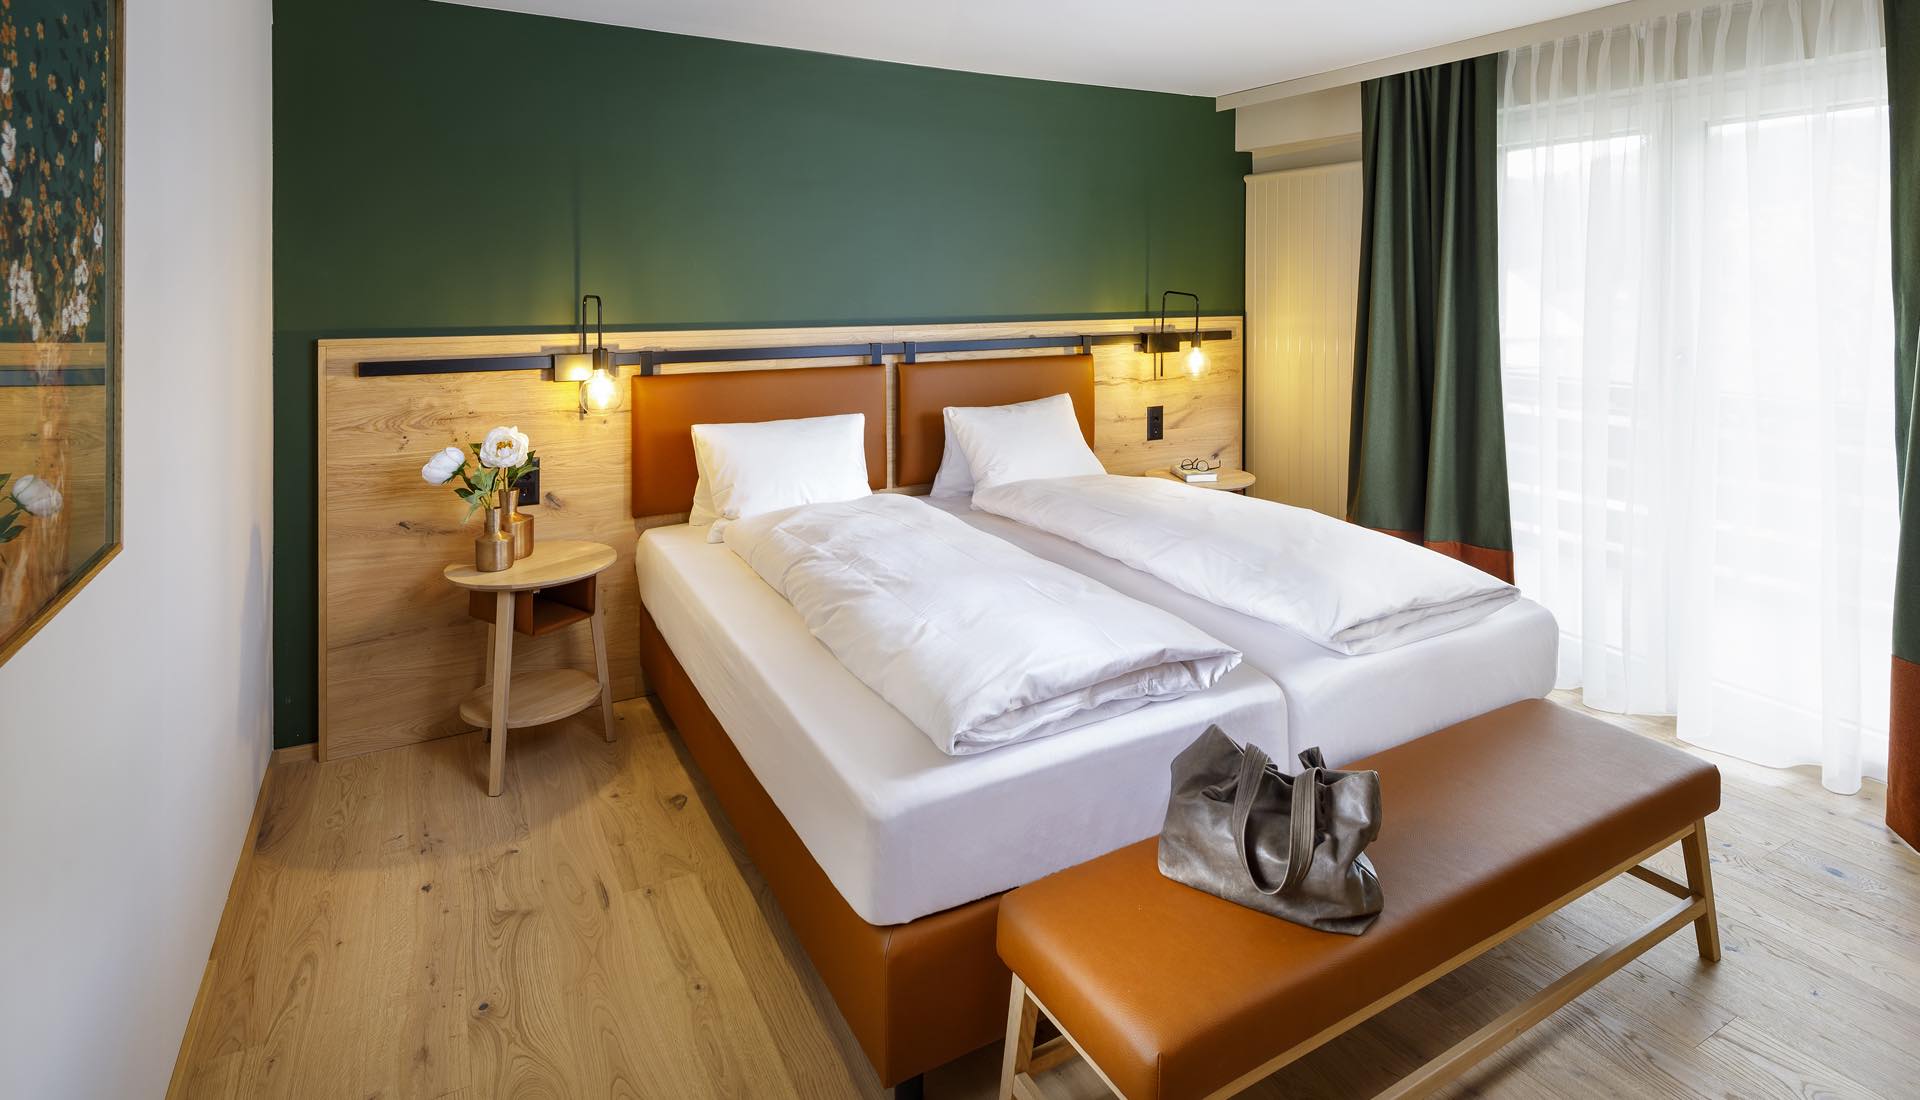 Renoviertes Hotelzimmer eingerichtet in gemütlichen Farben